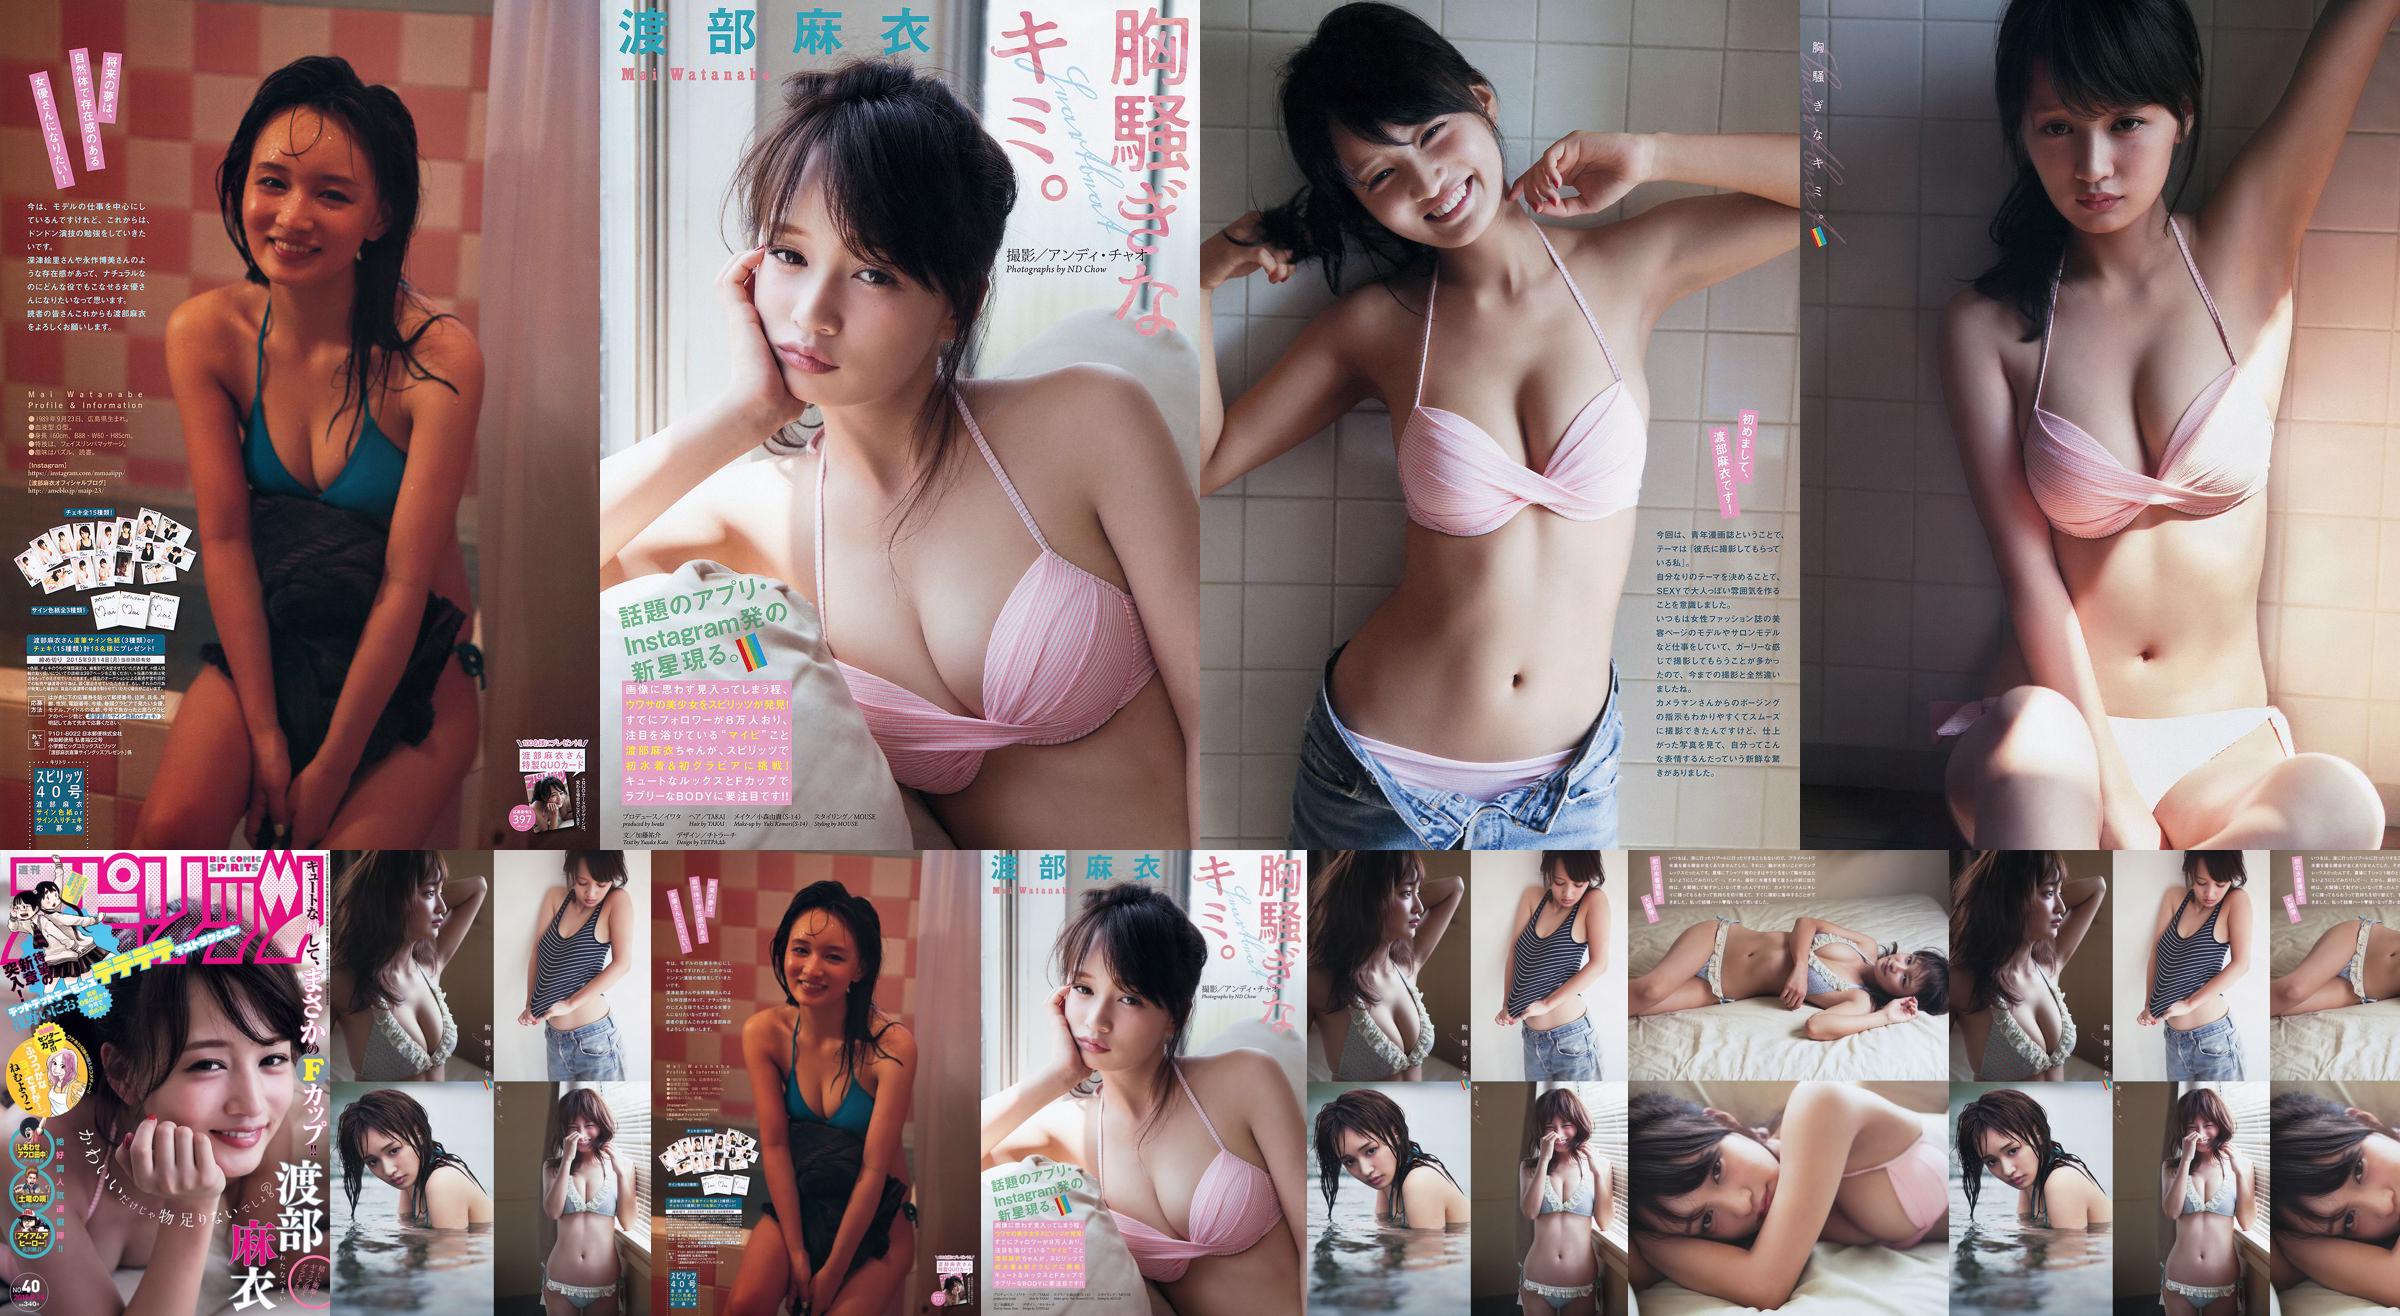 [Wekelijkse Big Comic Spirits] Watanabe Mai 2015 No.40 Photo Magazine No.7a43e0 Pagina 2